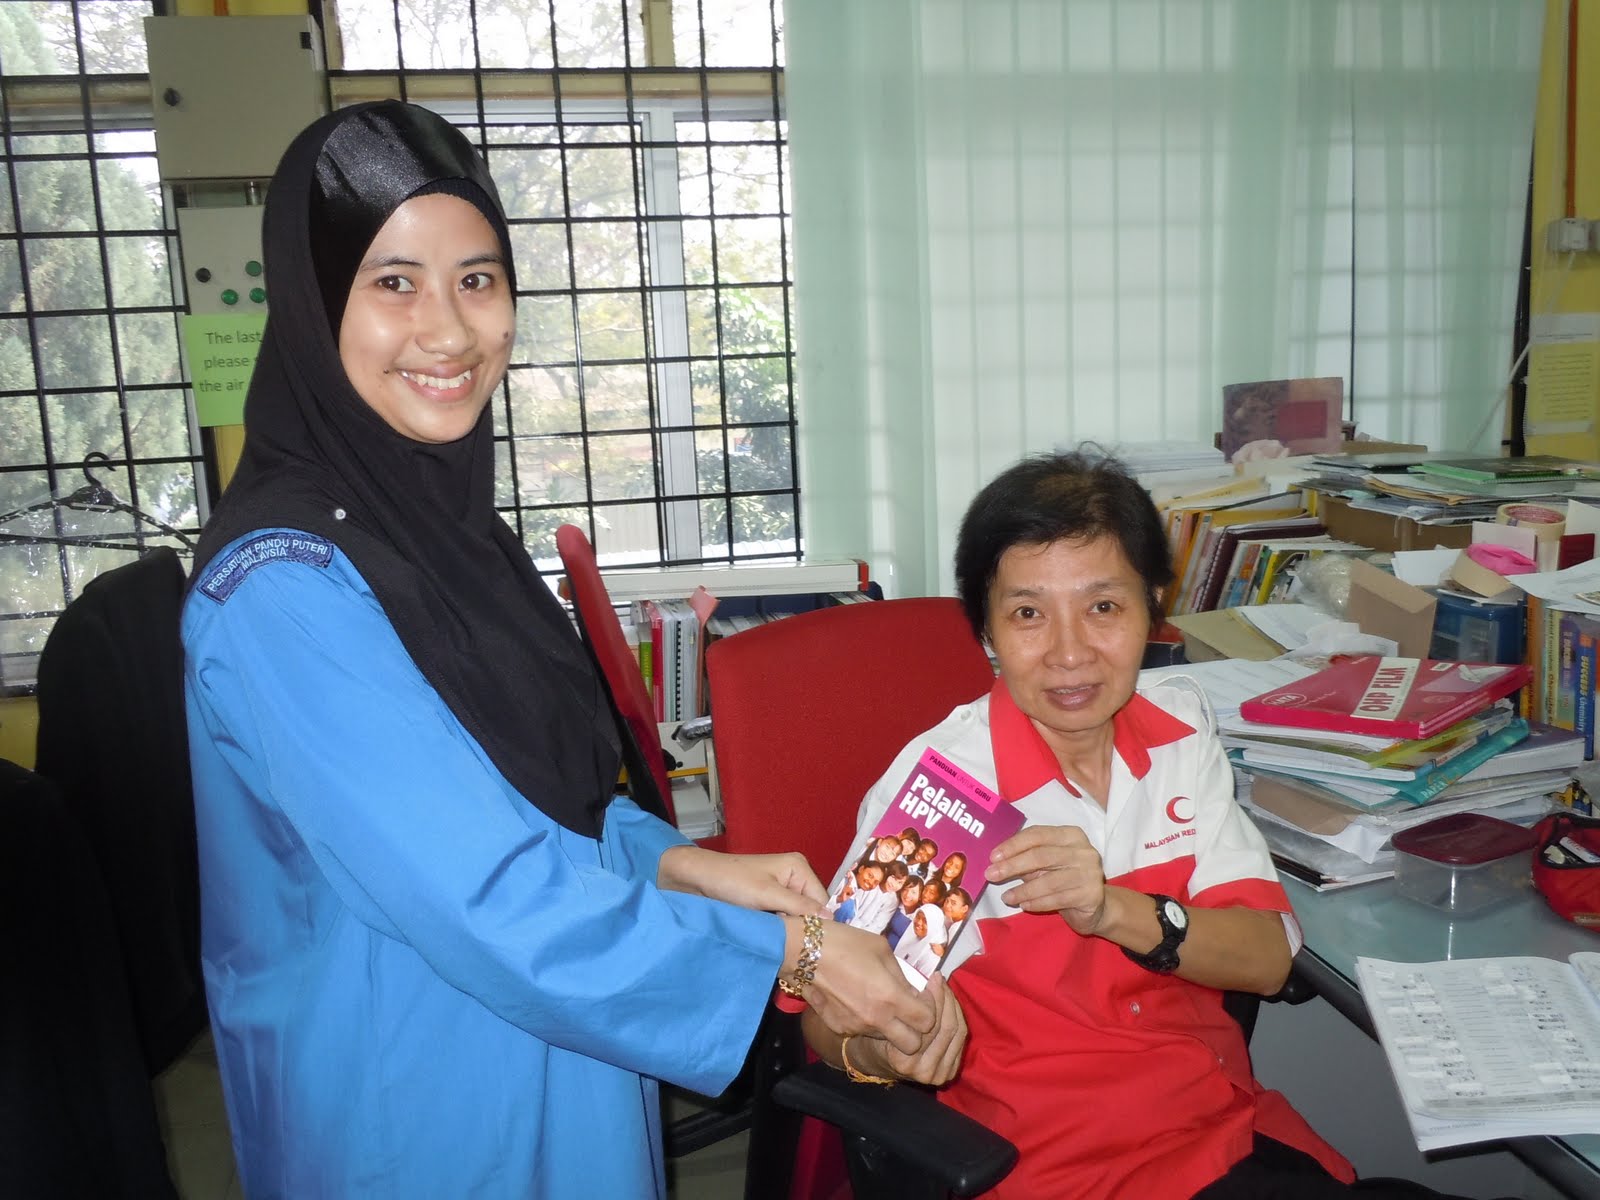 Maklumat berkenaan HPV kepada semua guru  SM Sains Selangor